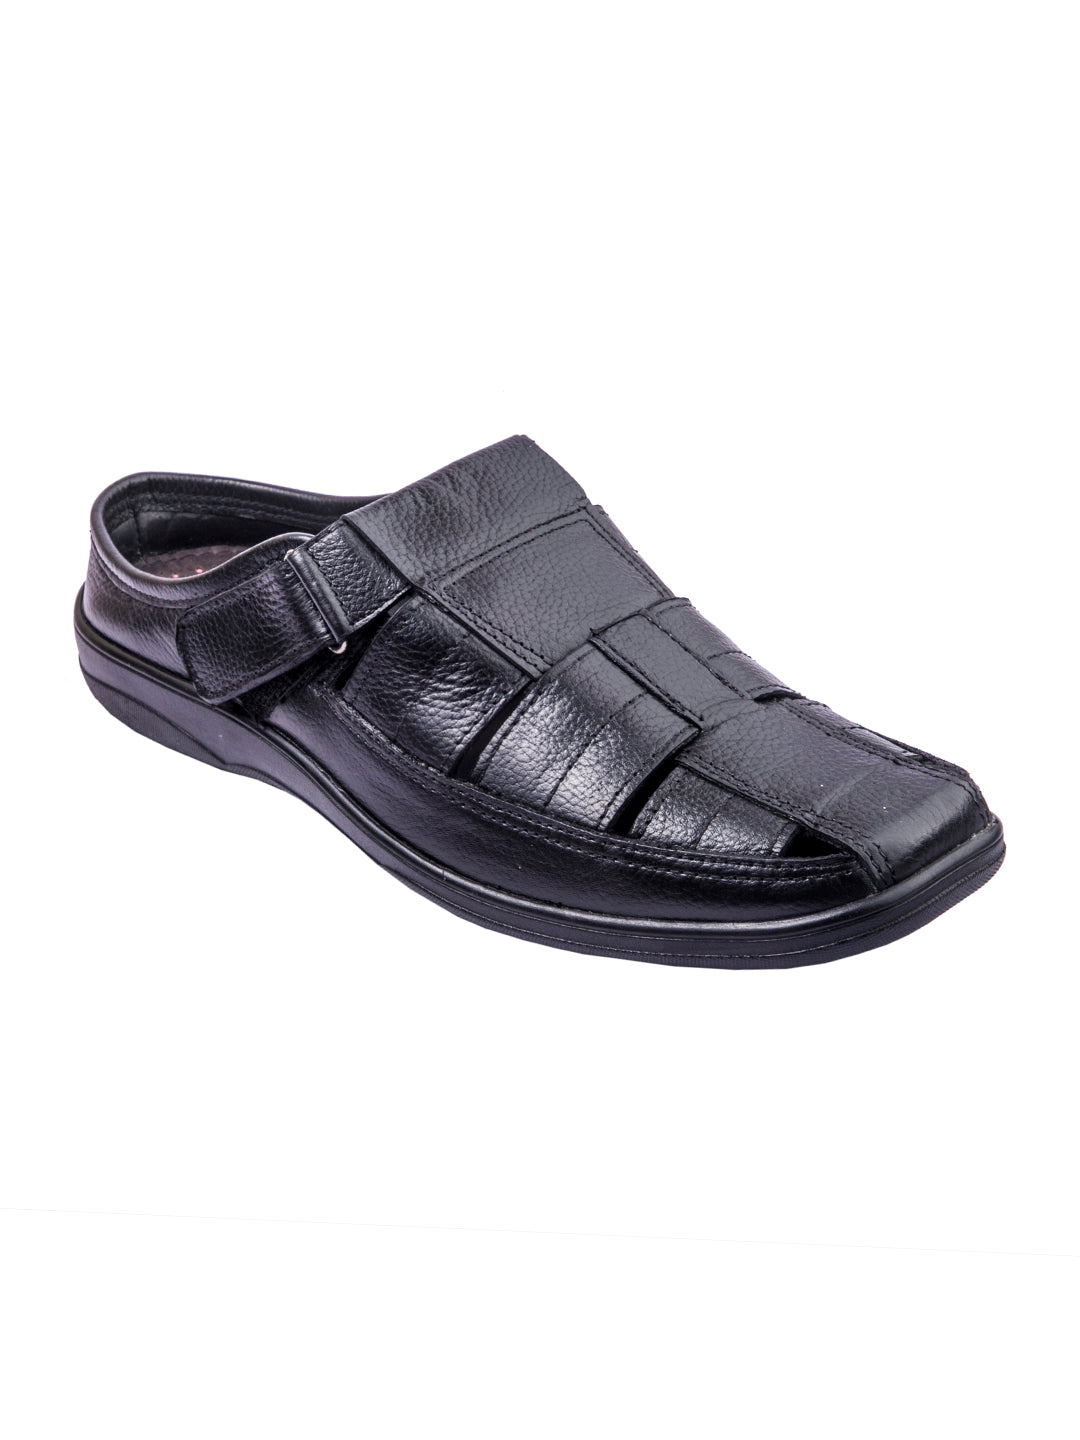 Trendsetter's Choice: Handmade Designer's Black Leather Open Sandals for Men